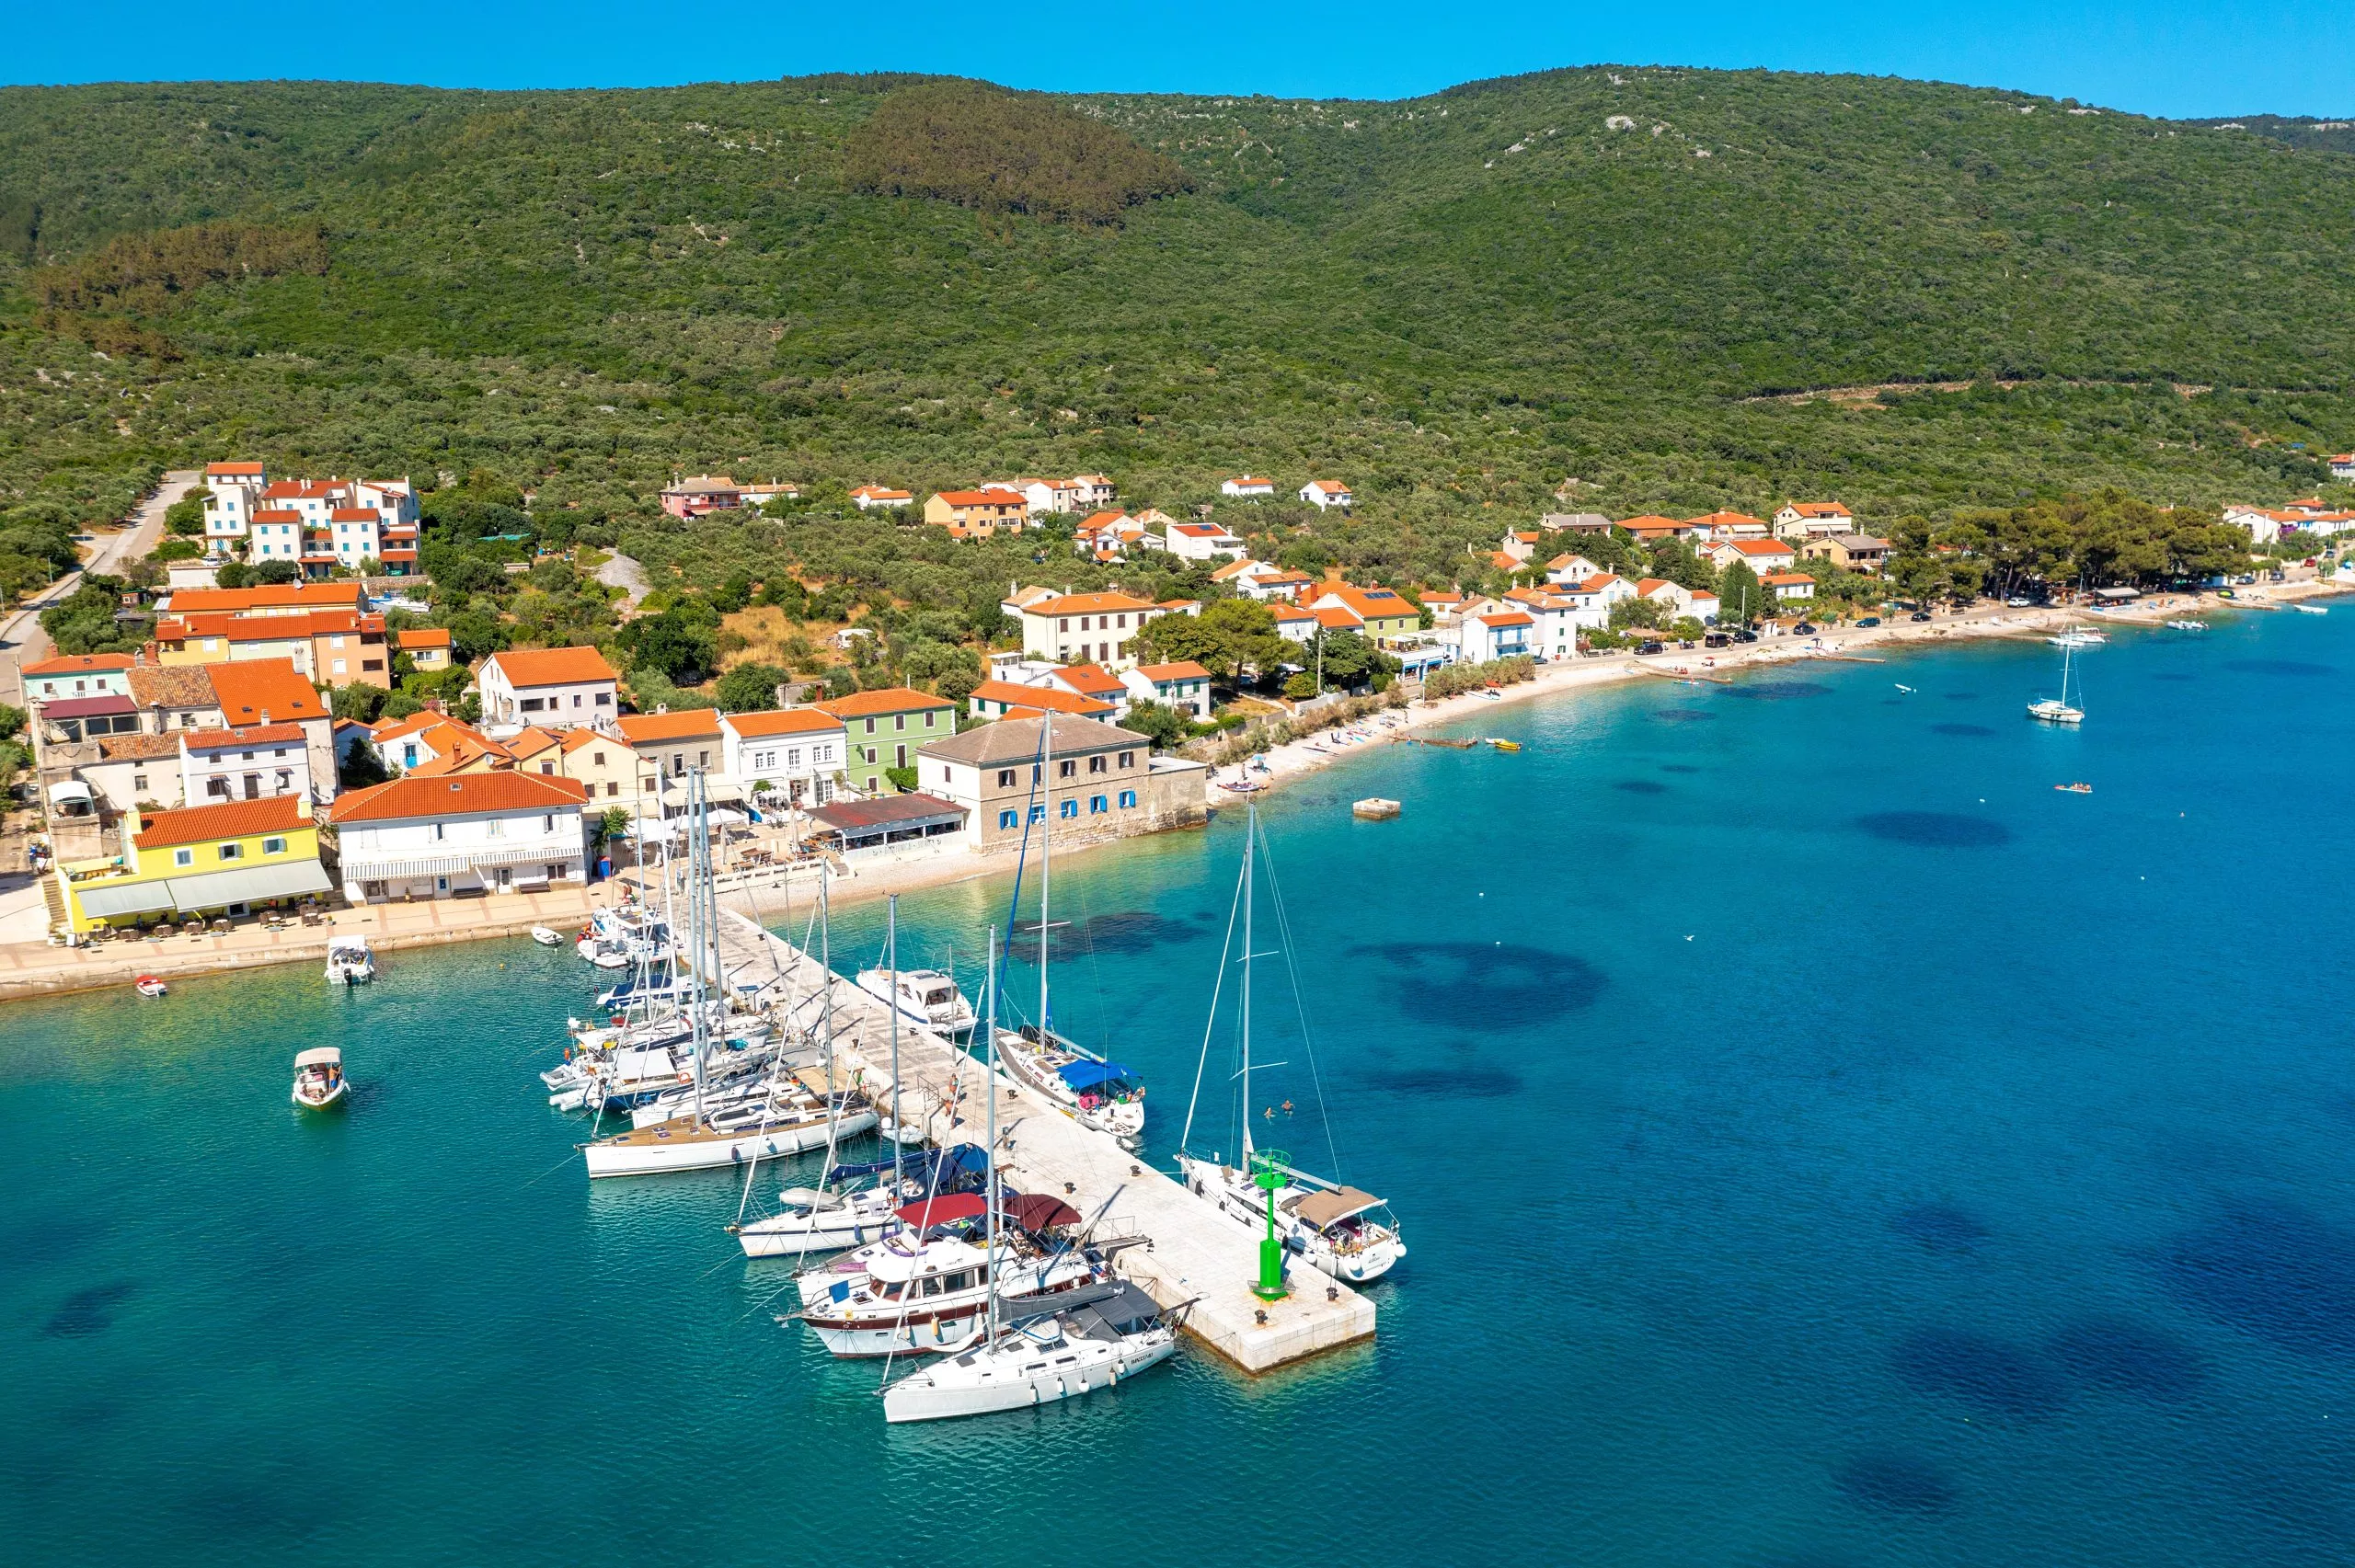 Luchtfoto van Martinšćica, een stad op het eiland Cres, in de Adriatische Zee in Kroatië